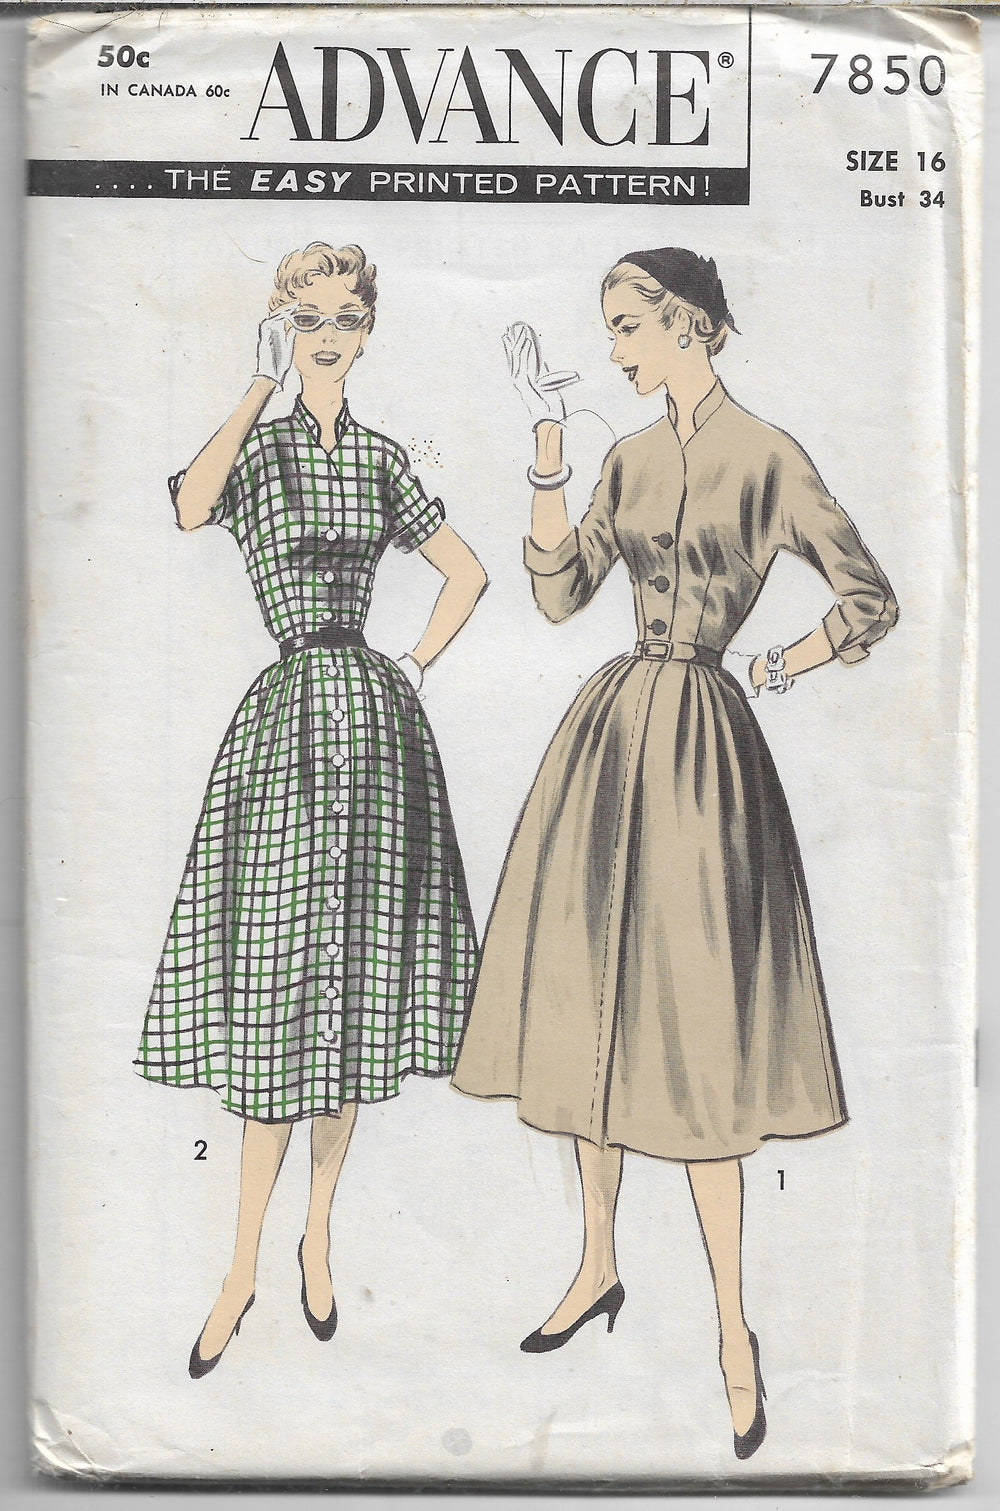 Advance 7850 dress vintage pattern